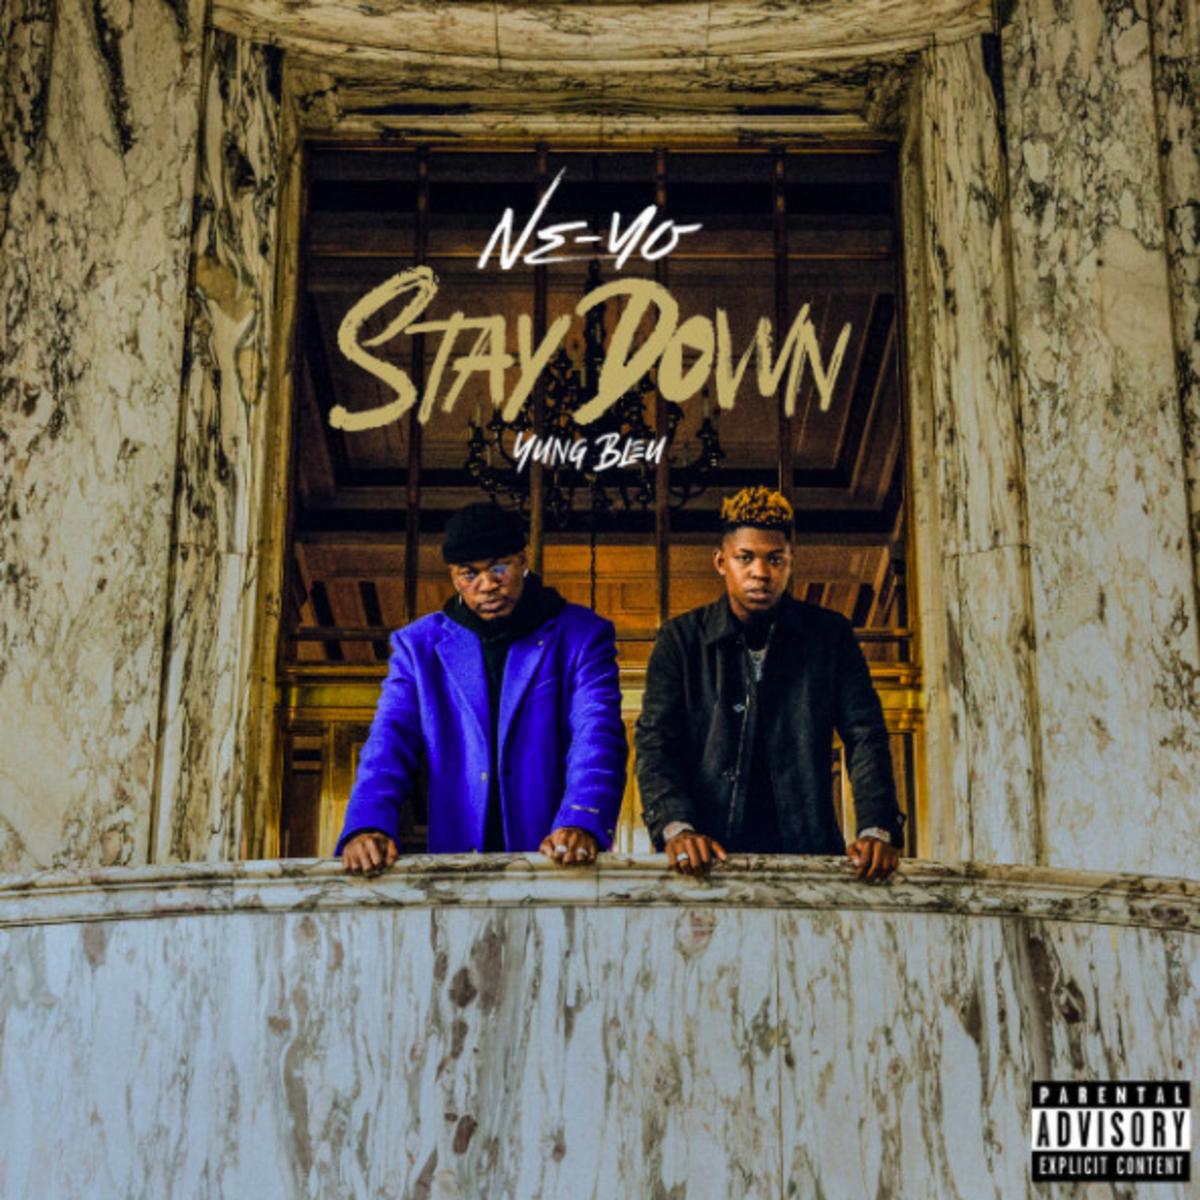 DOWNLOAD MP3: Ne-Yo - Stay Down Ft. Yung Bleu